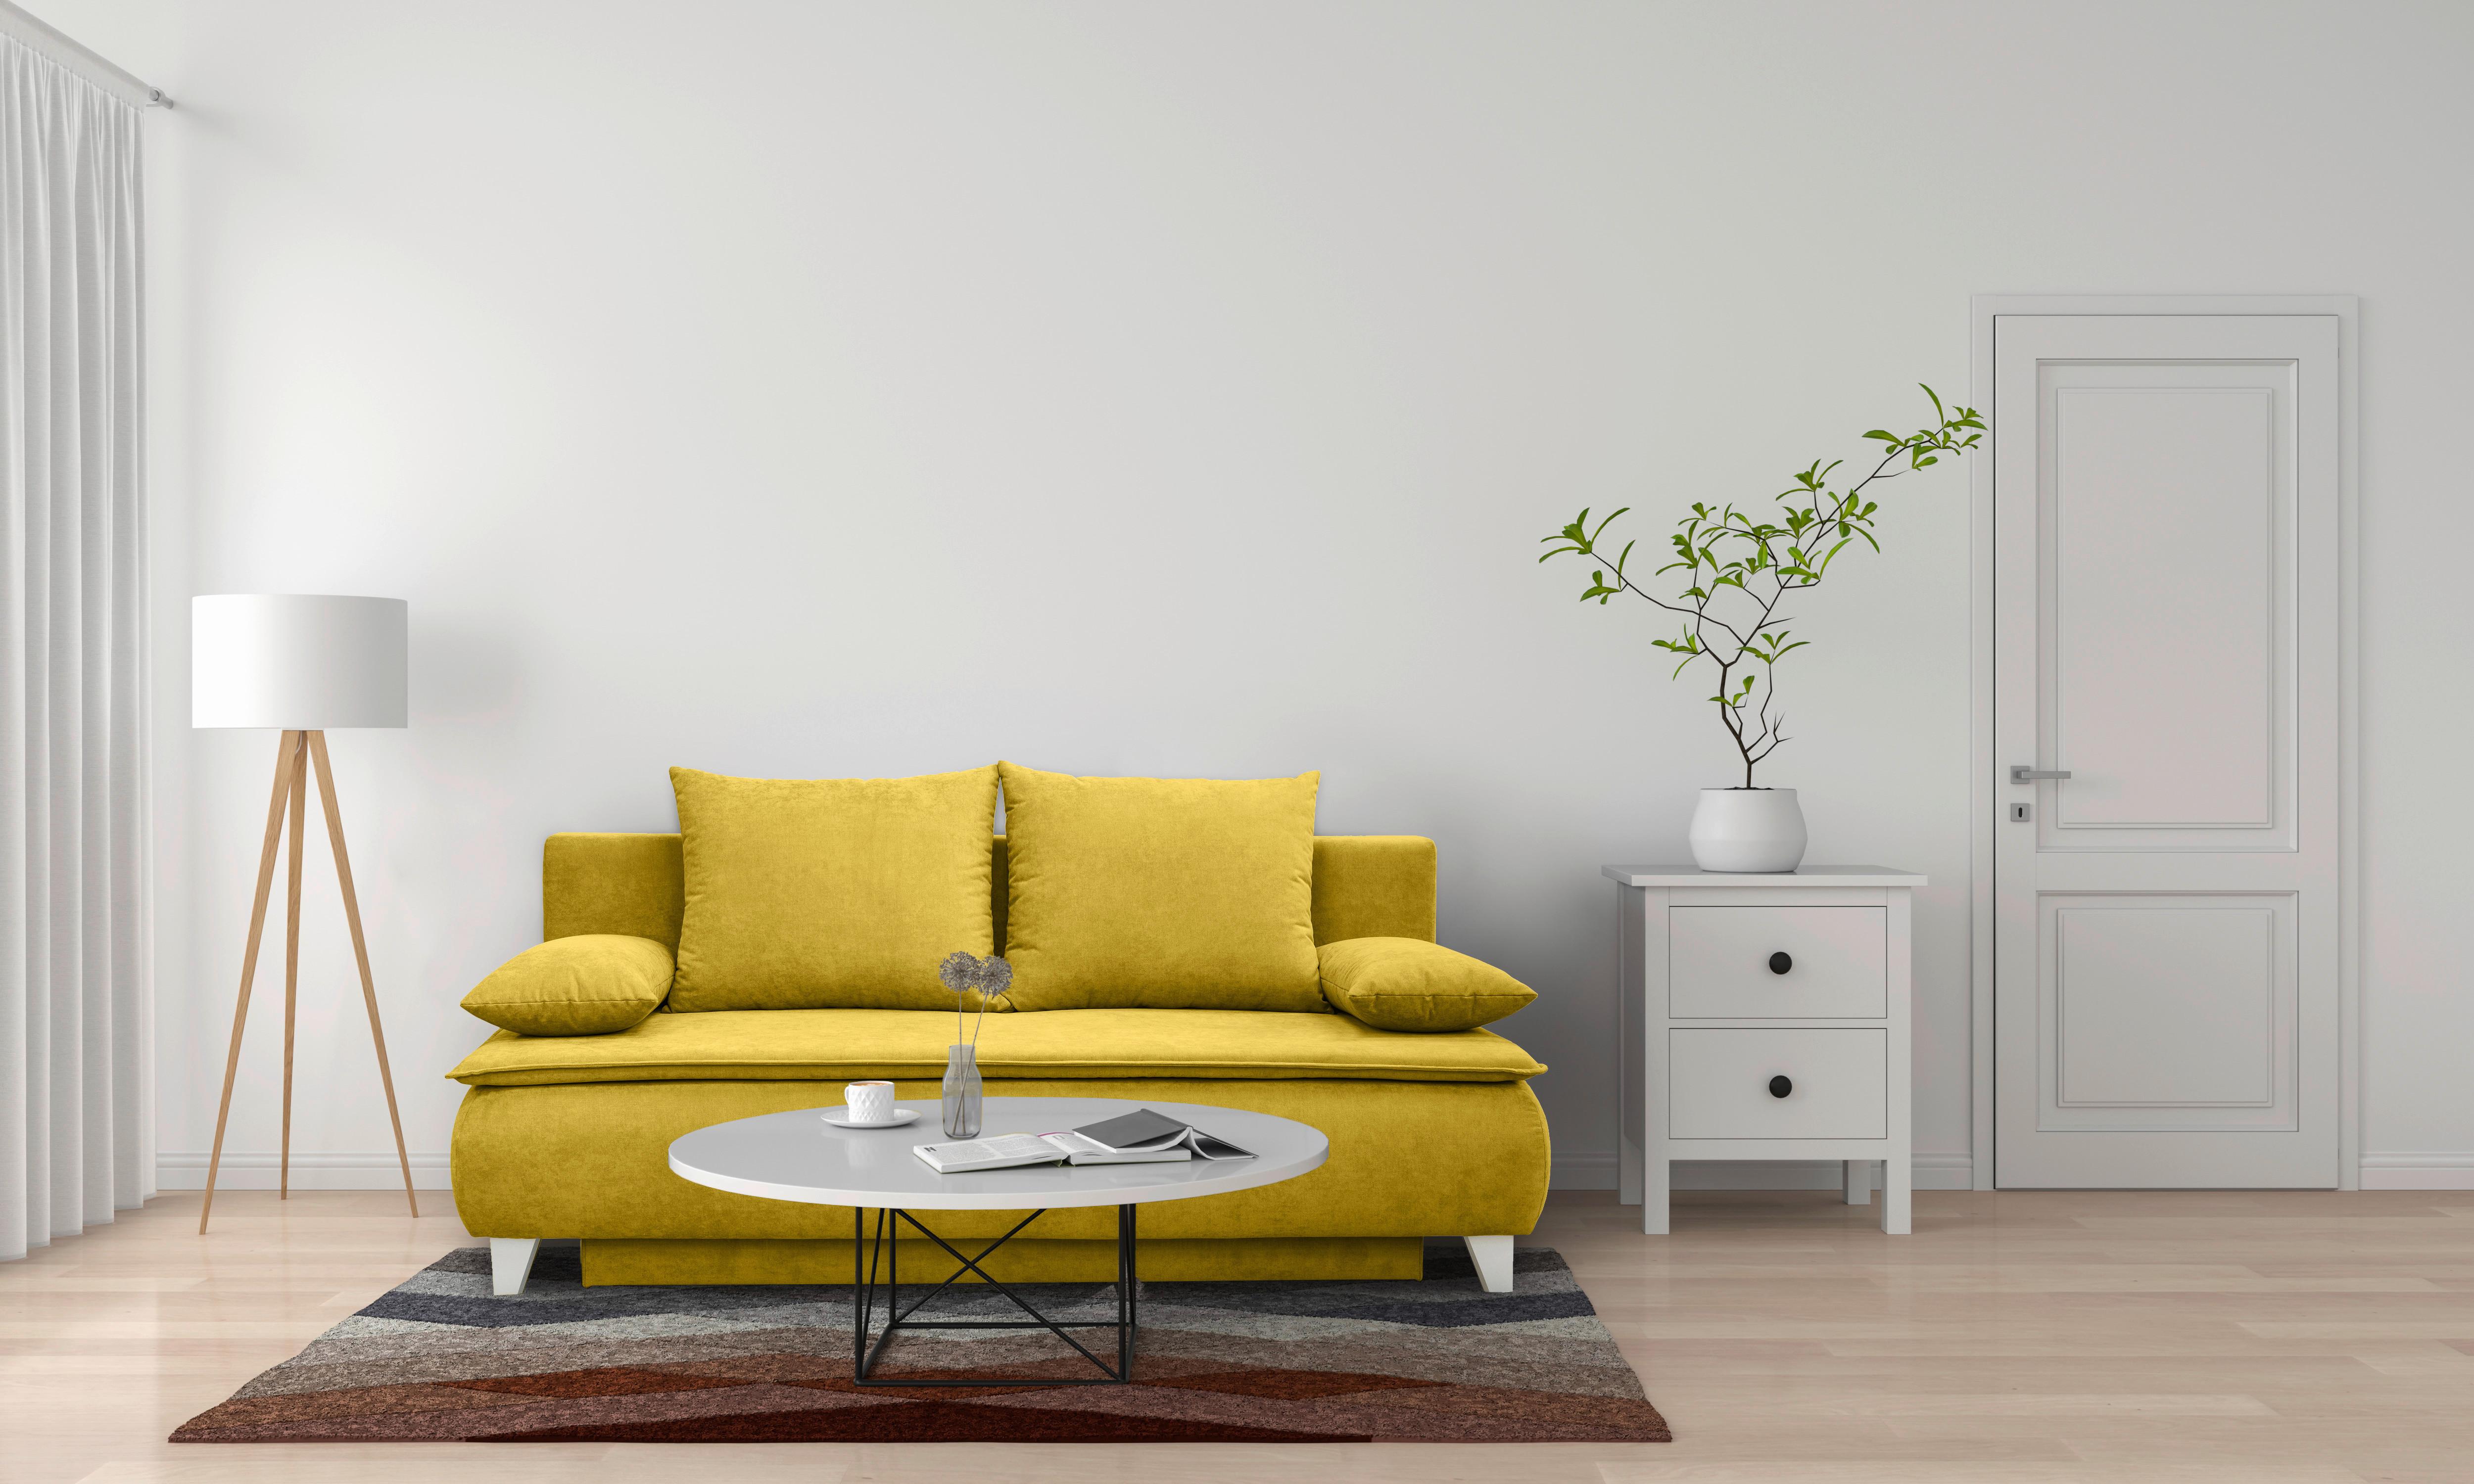 Boxspringová Pohovka Mona, Žlutá - barvy stříbra/žlutá, Moderní, dřevo/textil (208/100/106cm)